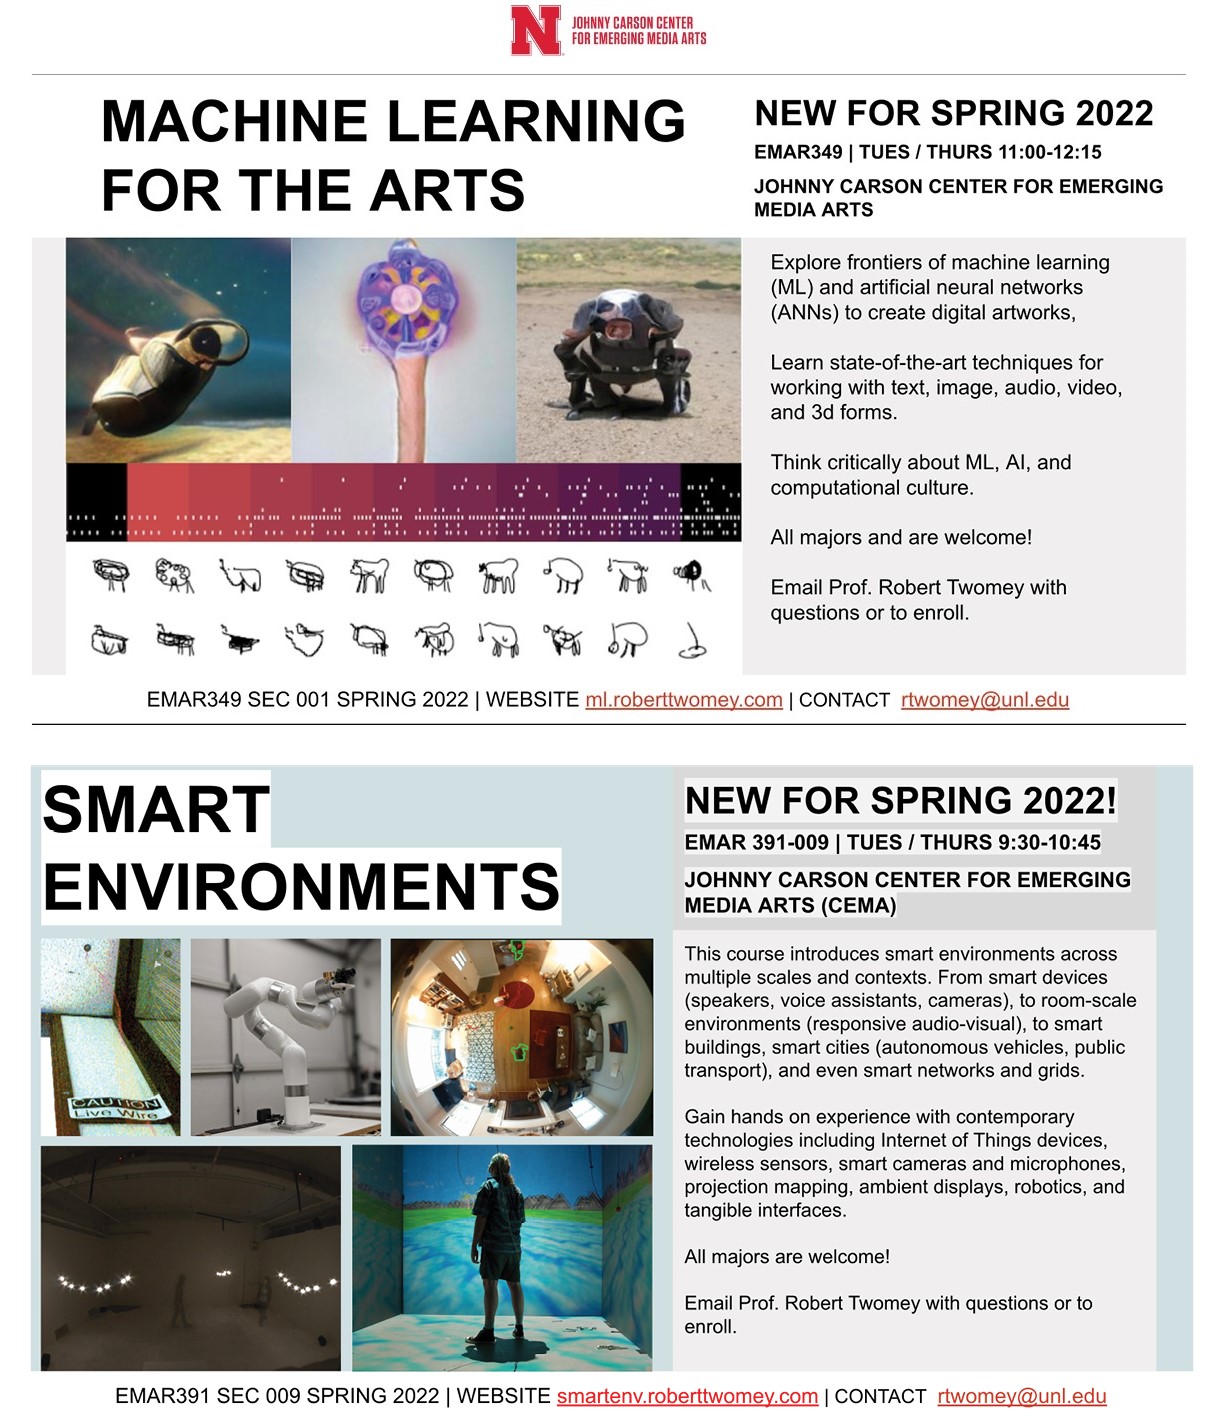 New Emerging Media Arts Courses!